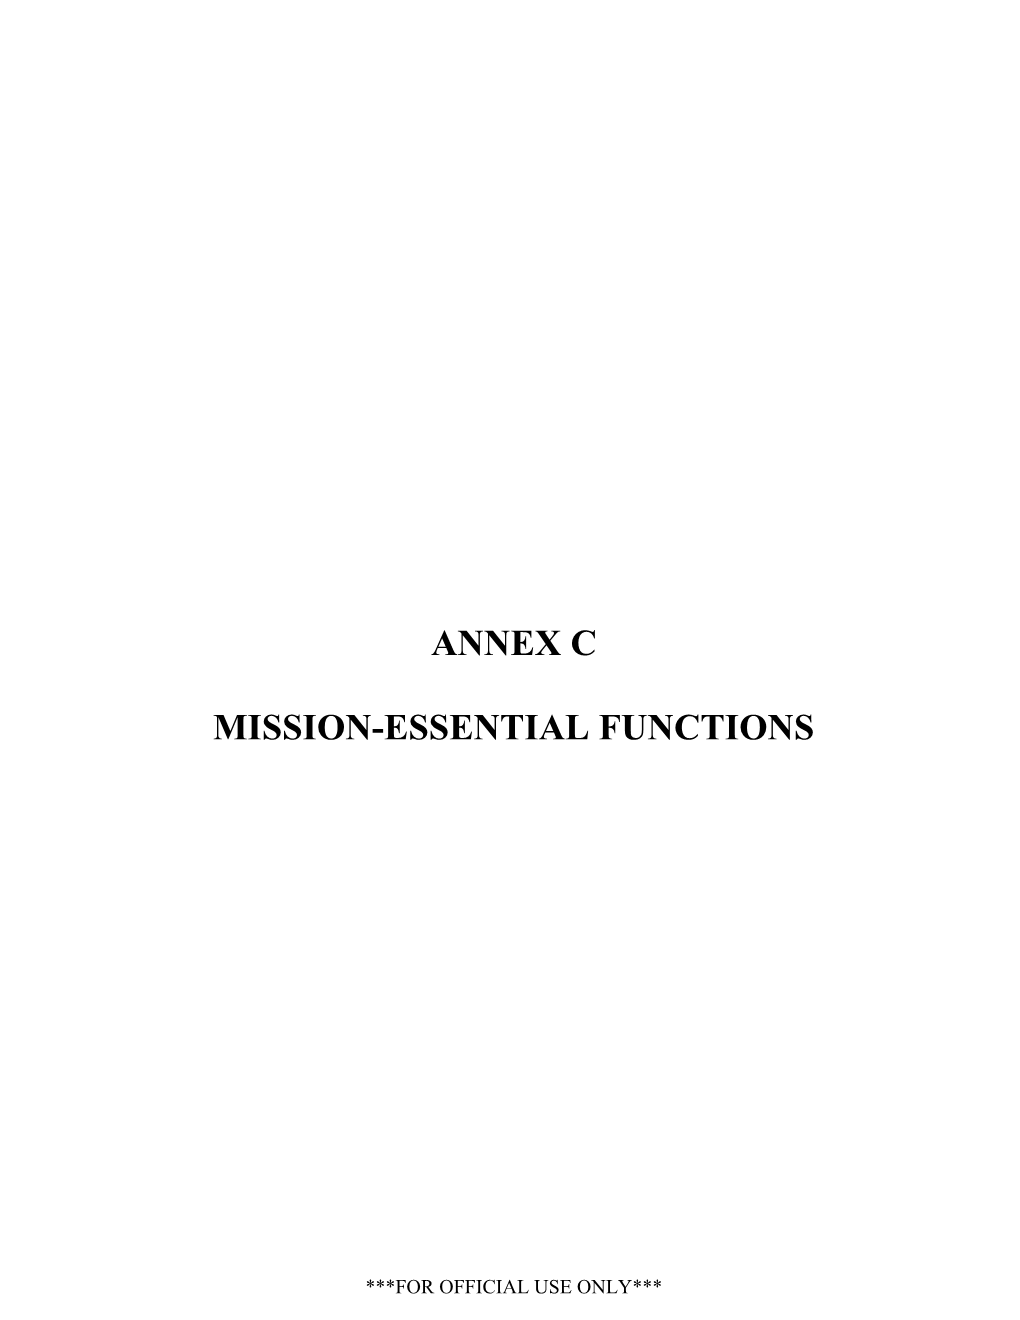 Annex C Mission-Essential Functions